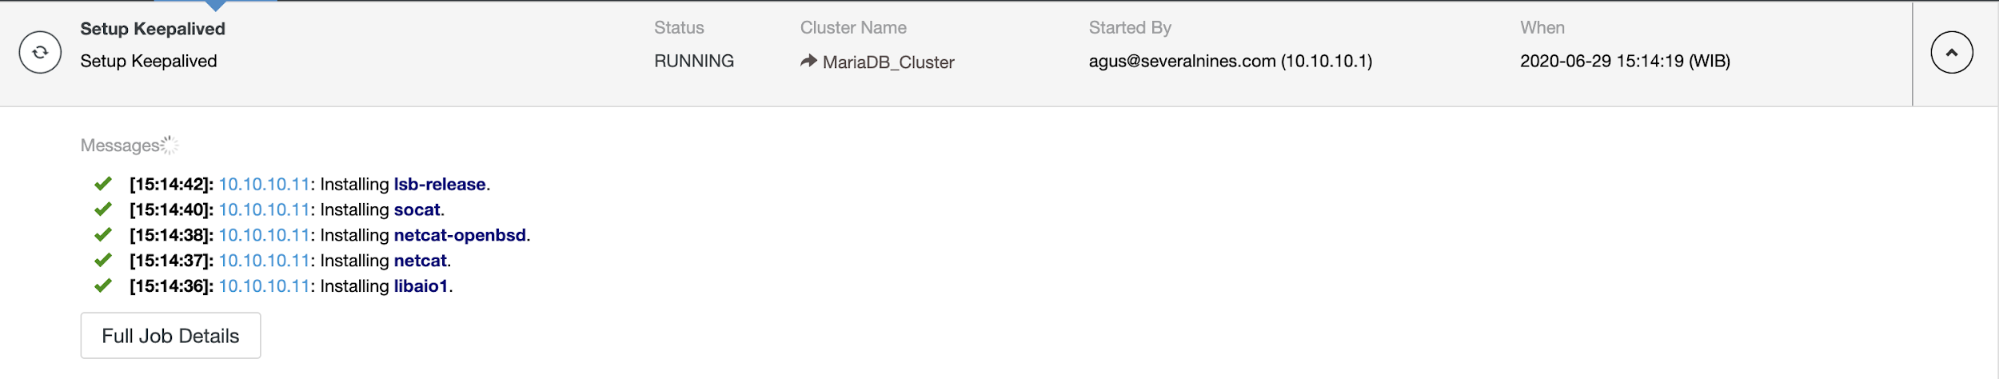 MariaDB Cluster Deployment